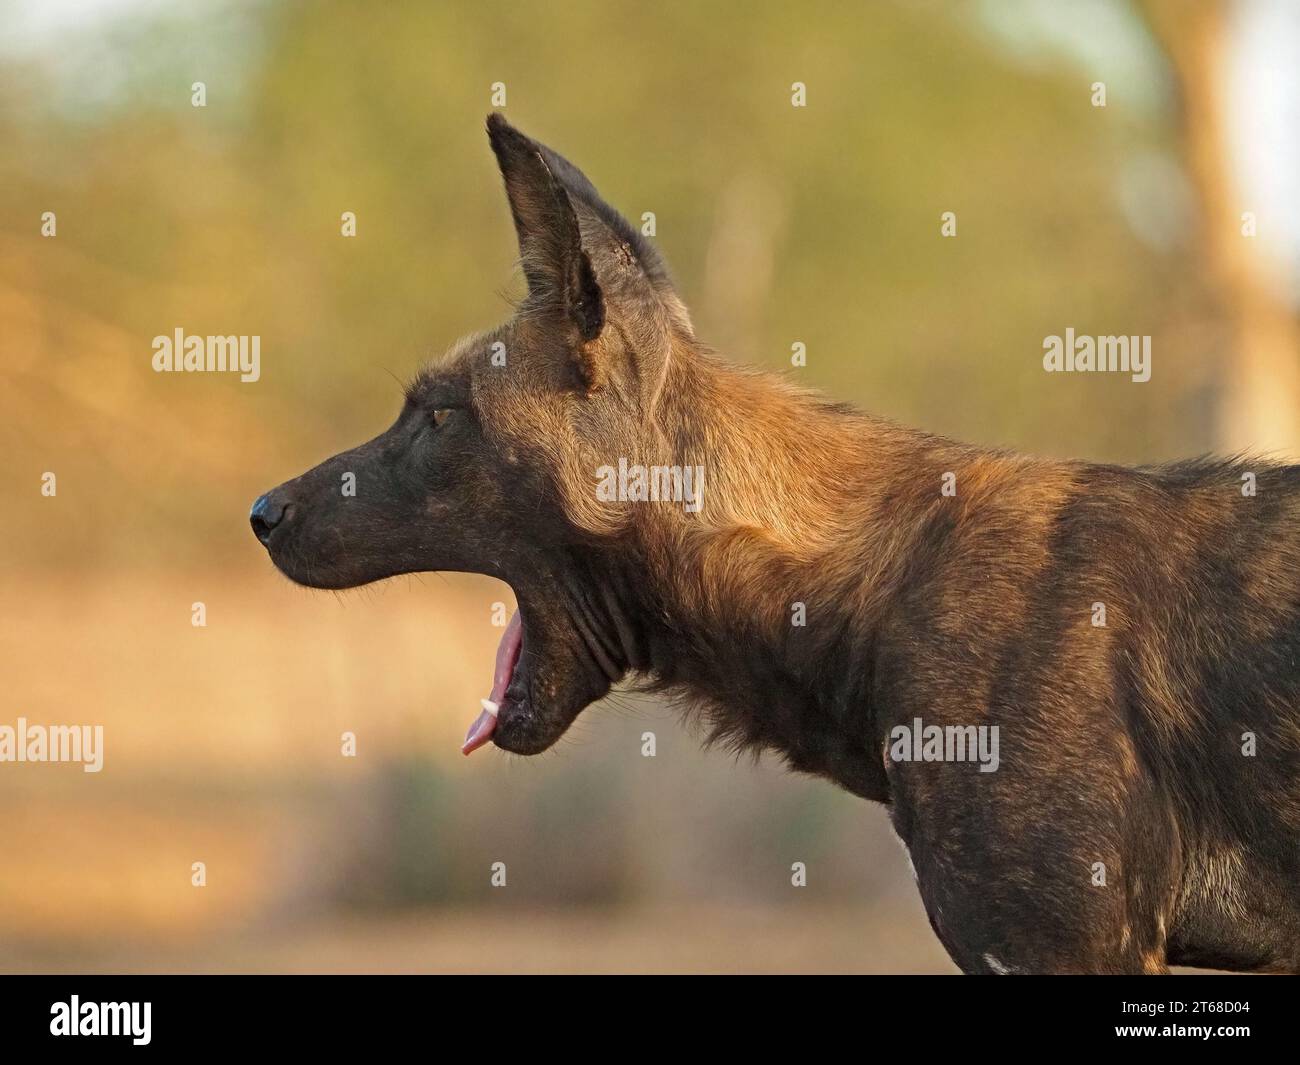 Profilporträt eines einzelnen wilden gemalten Wolfs (Lycaon pictus) alias African Wild Dog/Hunting Dog, Gähnen Laikipia, Kenia, Afrika Stockfoto